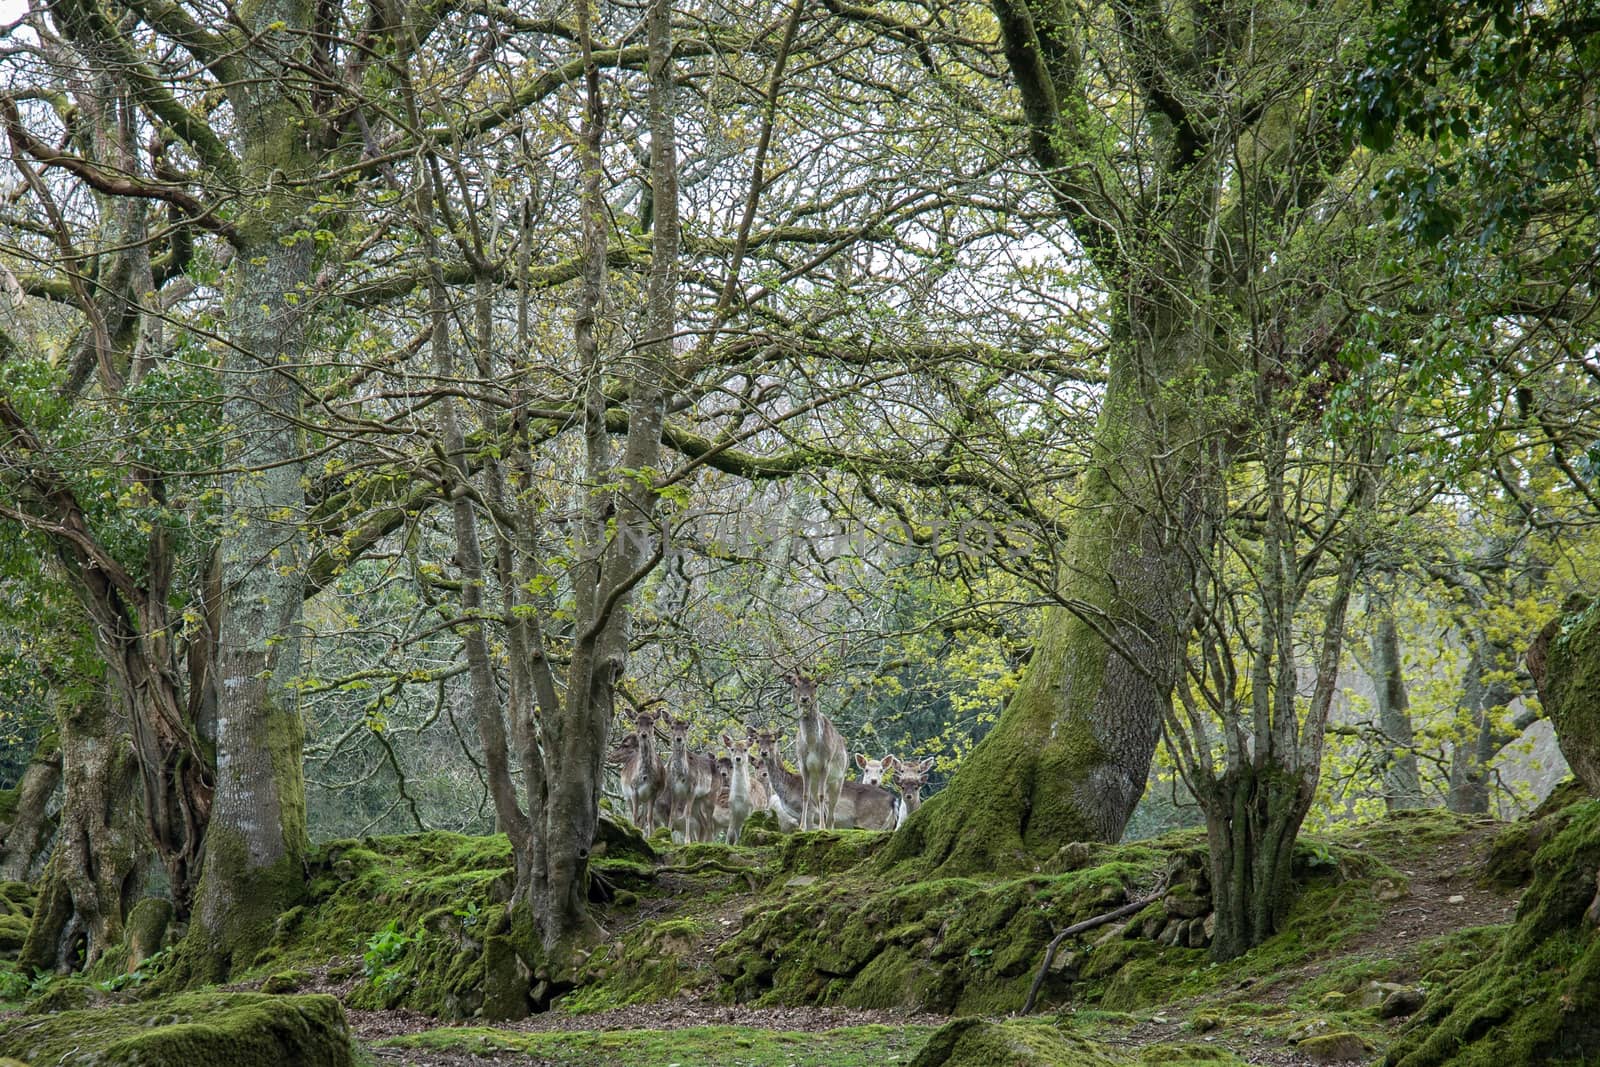 Herd of shy Fallow deer in Cornwall, UK by magicbones